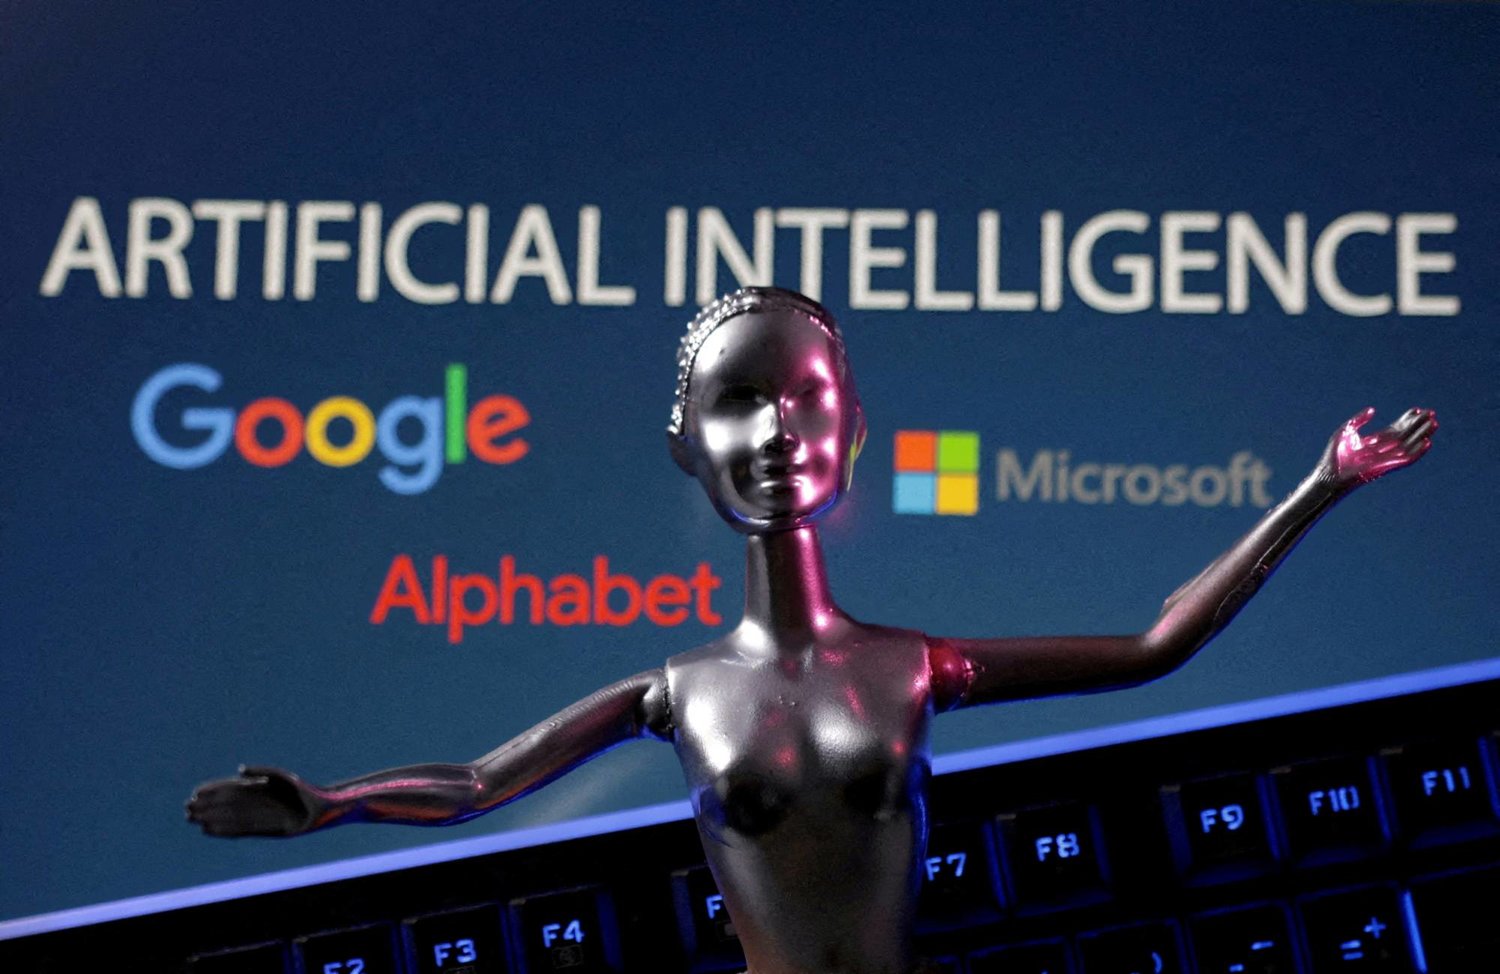 جوجل تطلق روبوتات دردشة ذكية تشبه المشاهير: ثورة في عالم التفاعل الرقمي؟